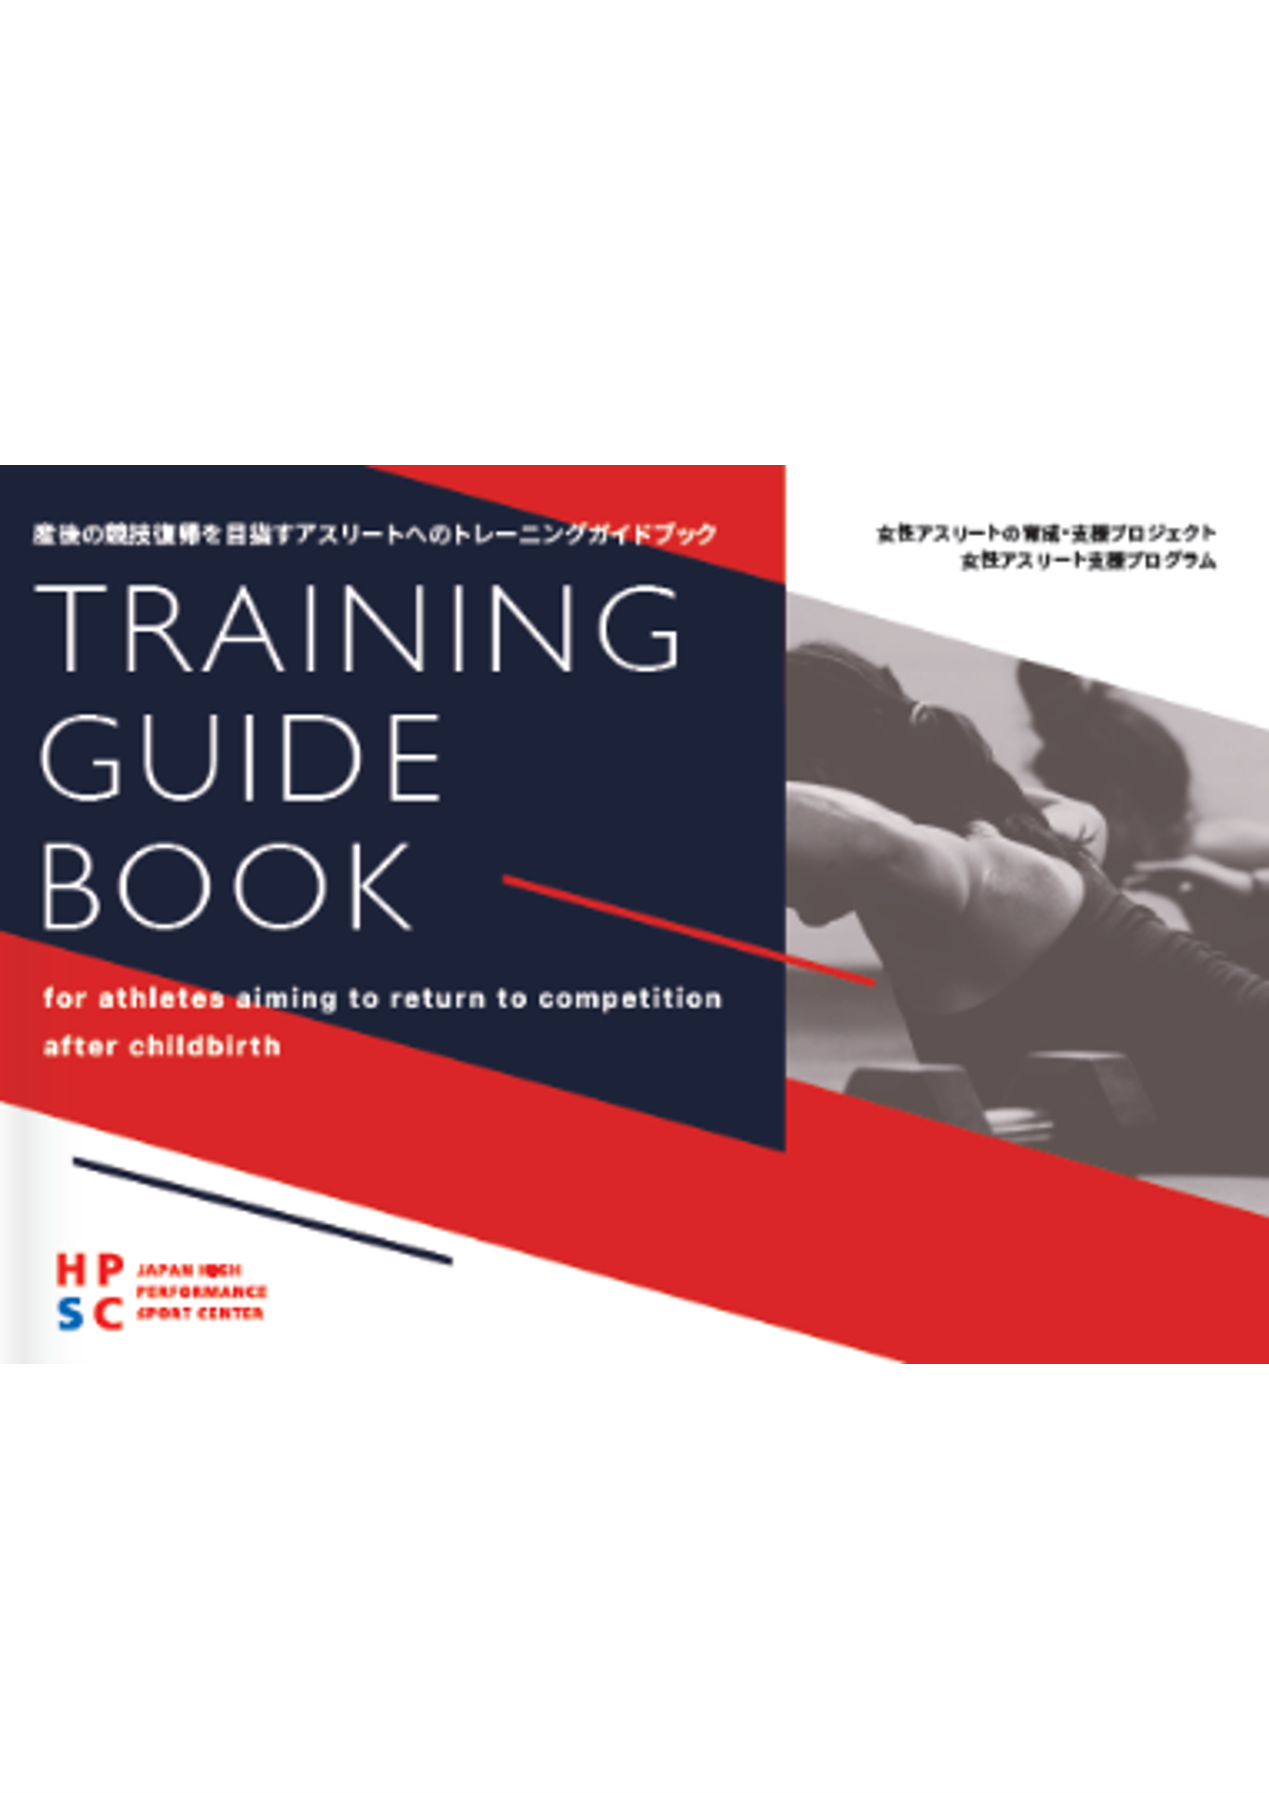 表紙_Training Guide Book